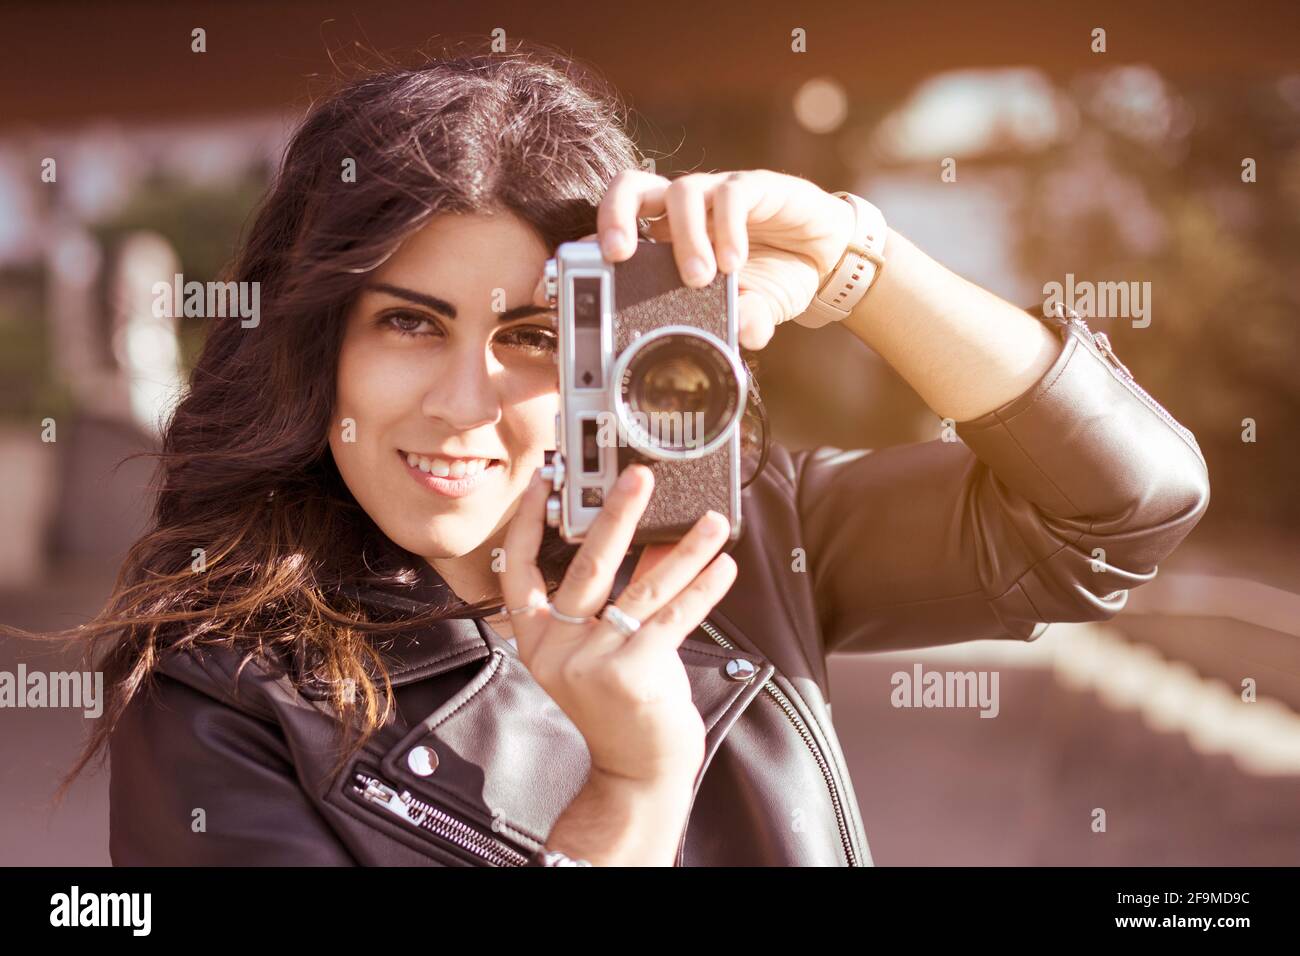 Portrait d'une jeune photographe féminine prenant une photo avec son appareil photo analogique. Elle est souriante en ville et vêtue de façon décontractée. Espace pour le texte. Banque D'Images